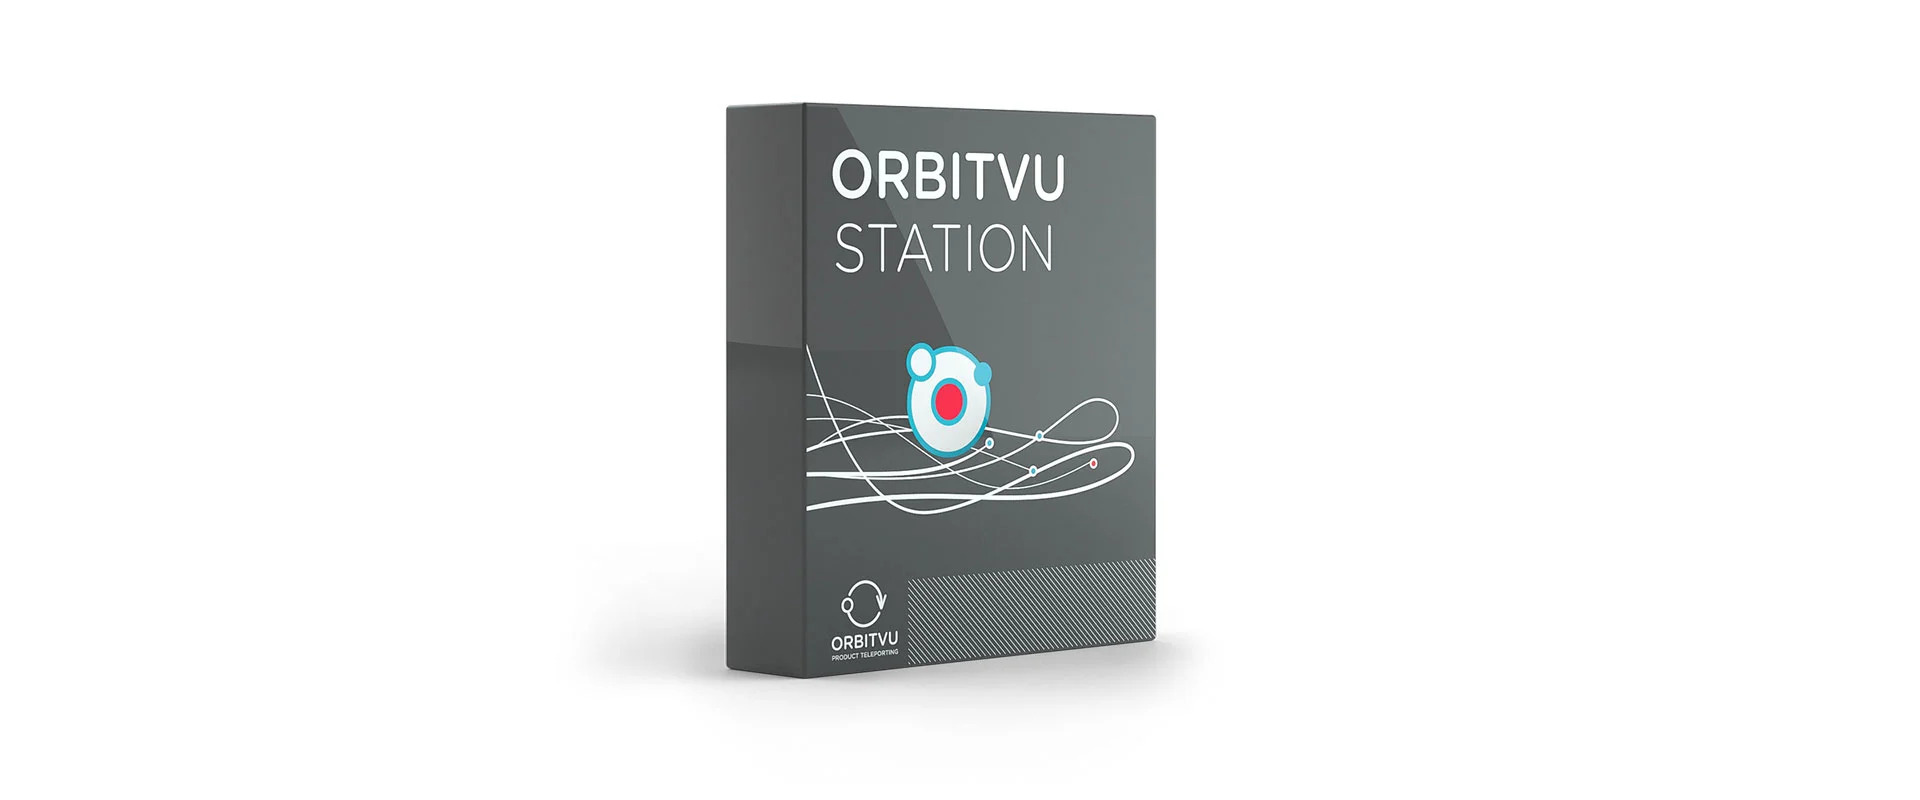 Orbitviu Station